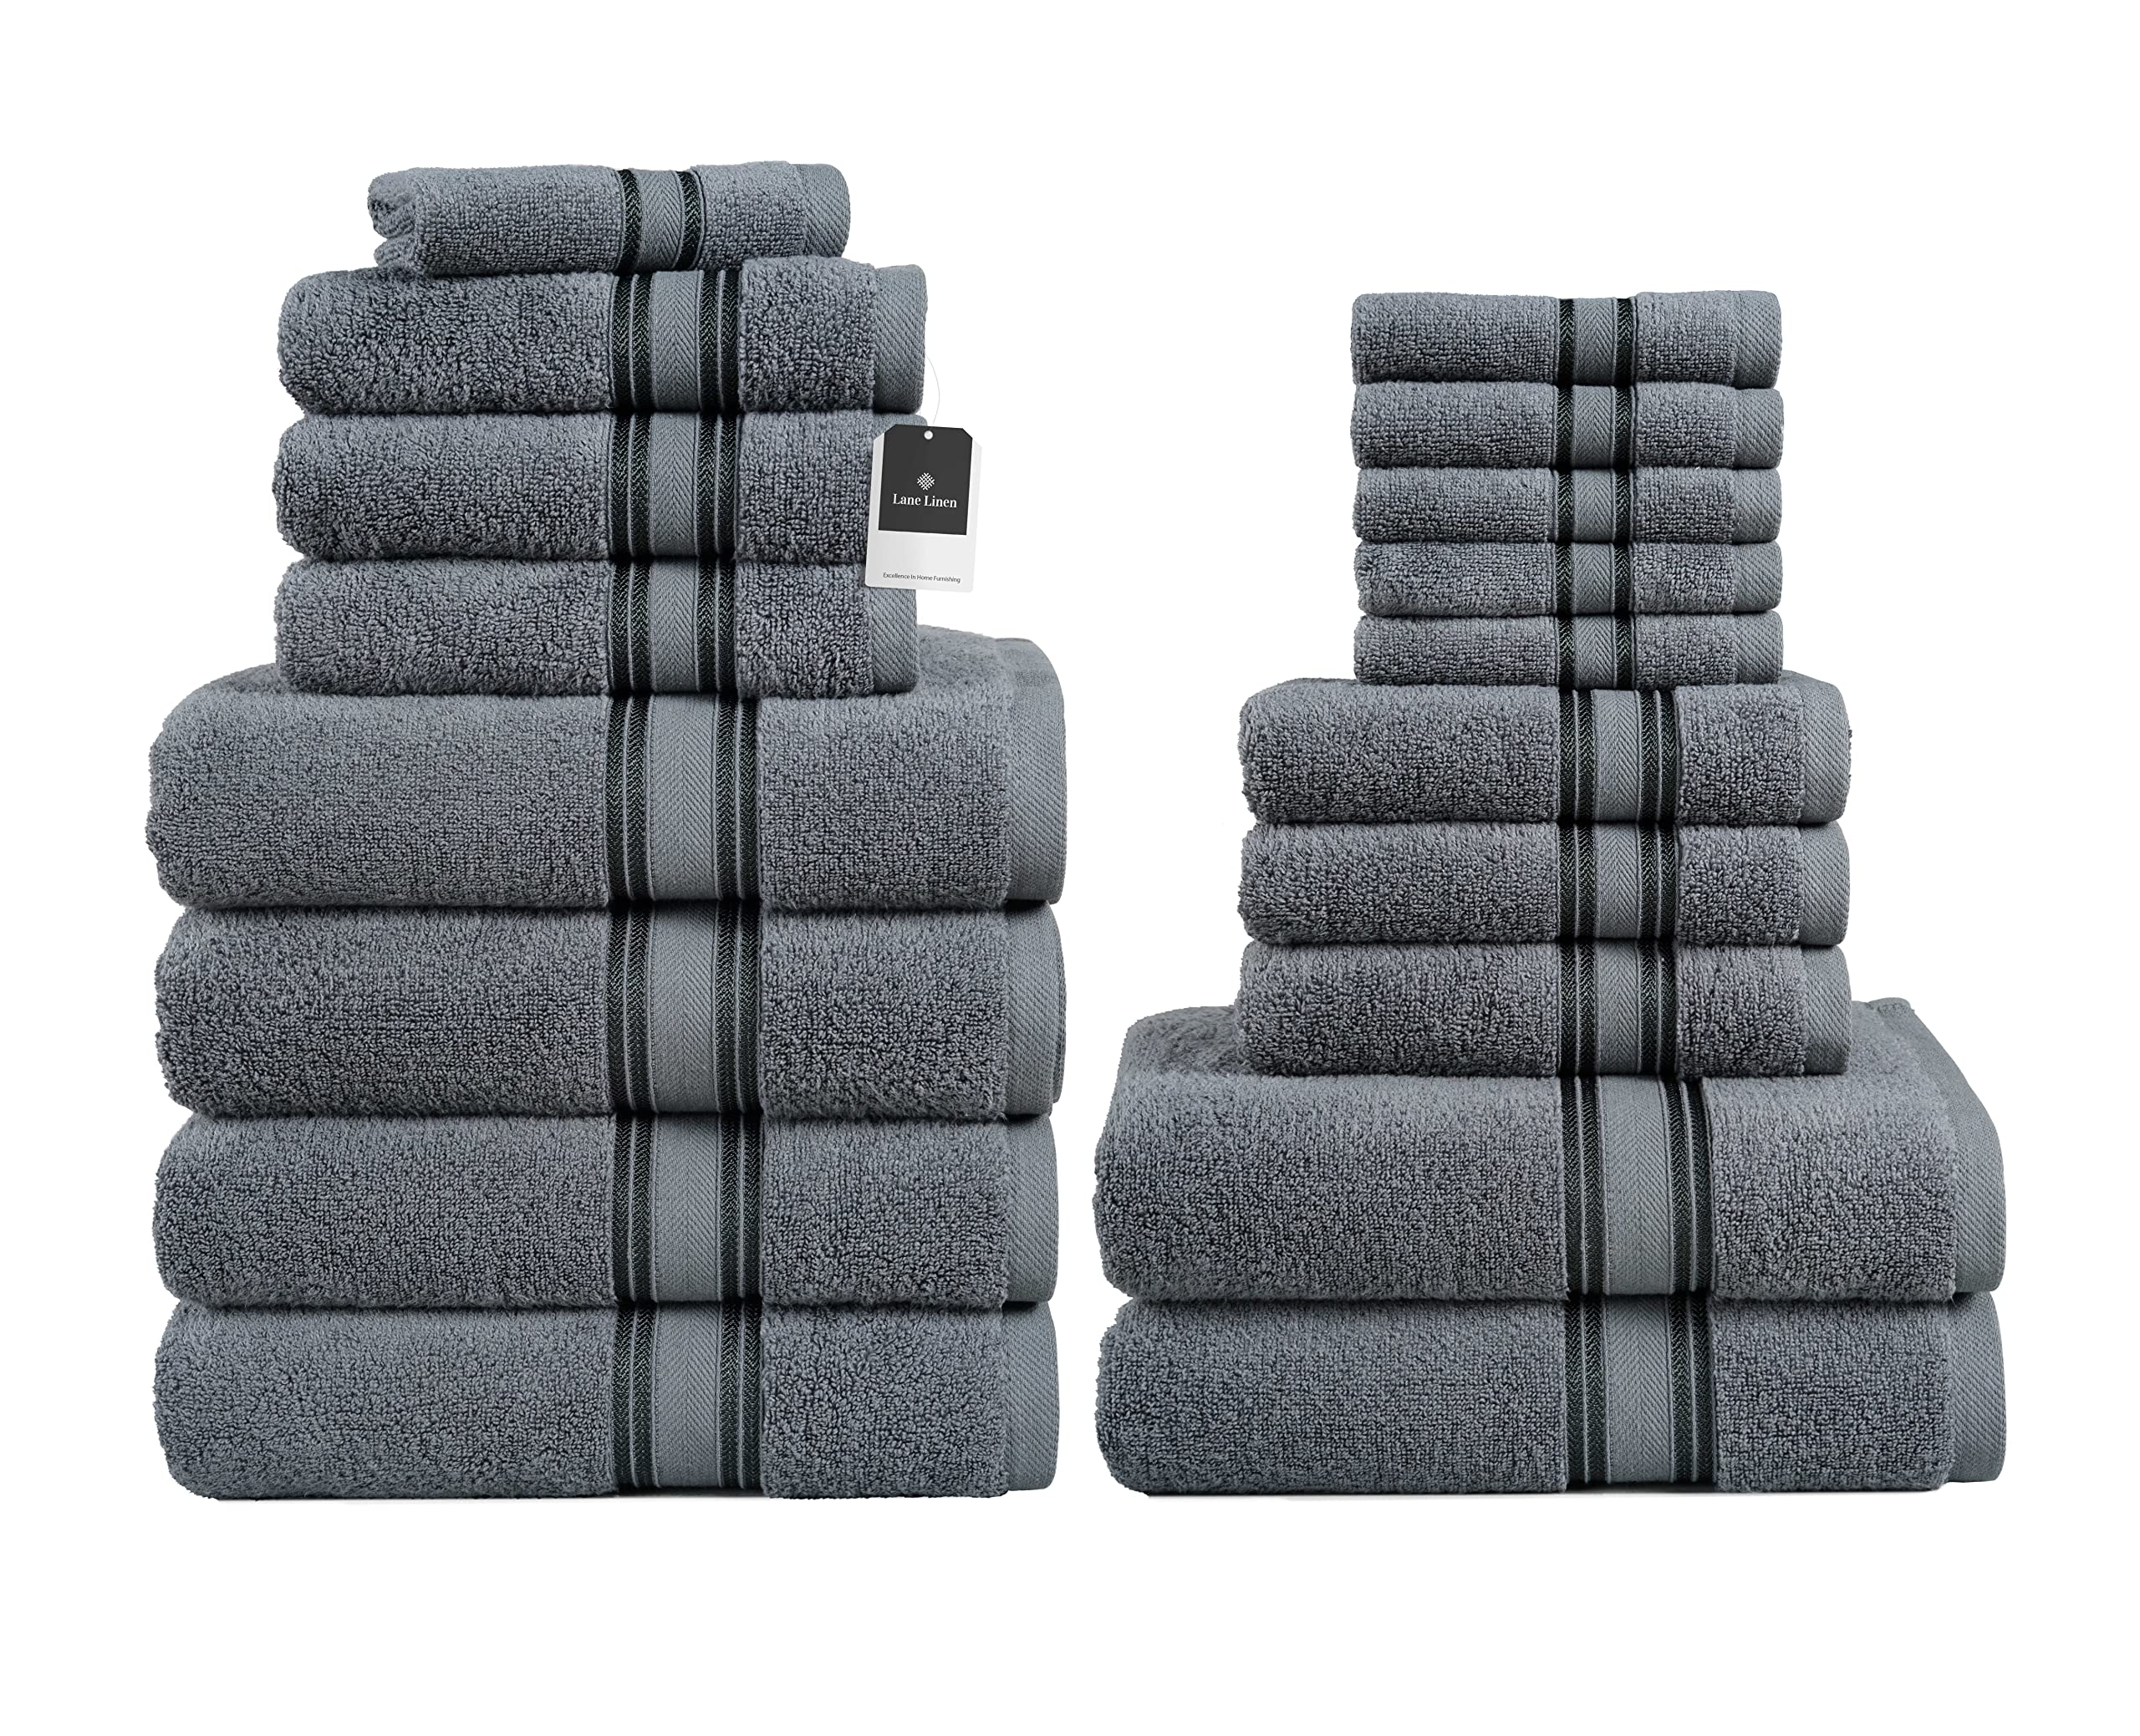 LANE LINEN Kitchen Towels Set - Pack of 6 Cotton Dish Cloths, 18”X